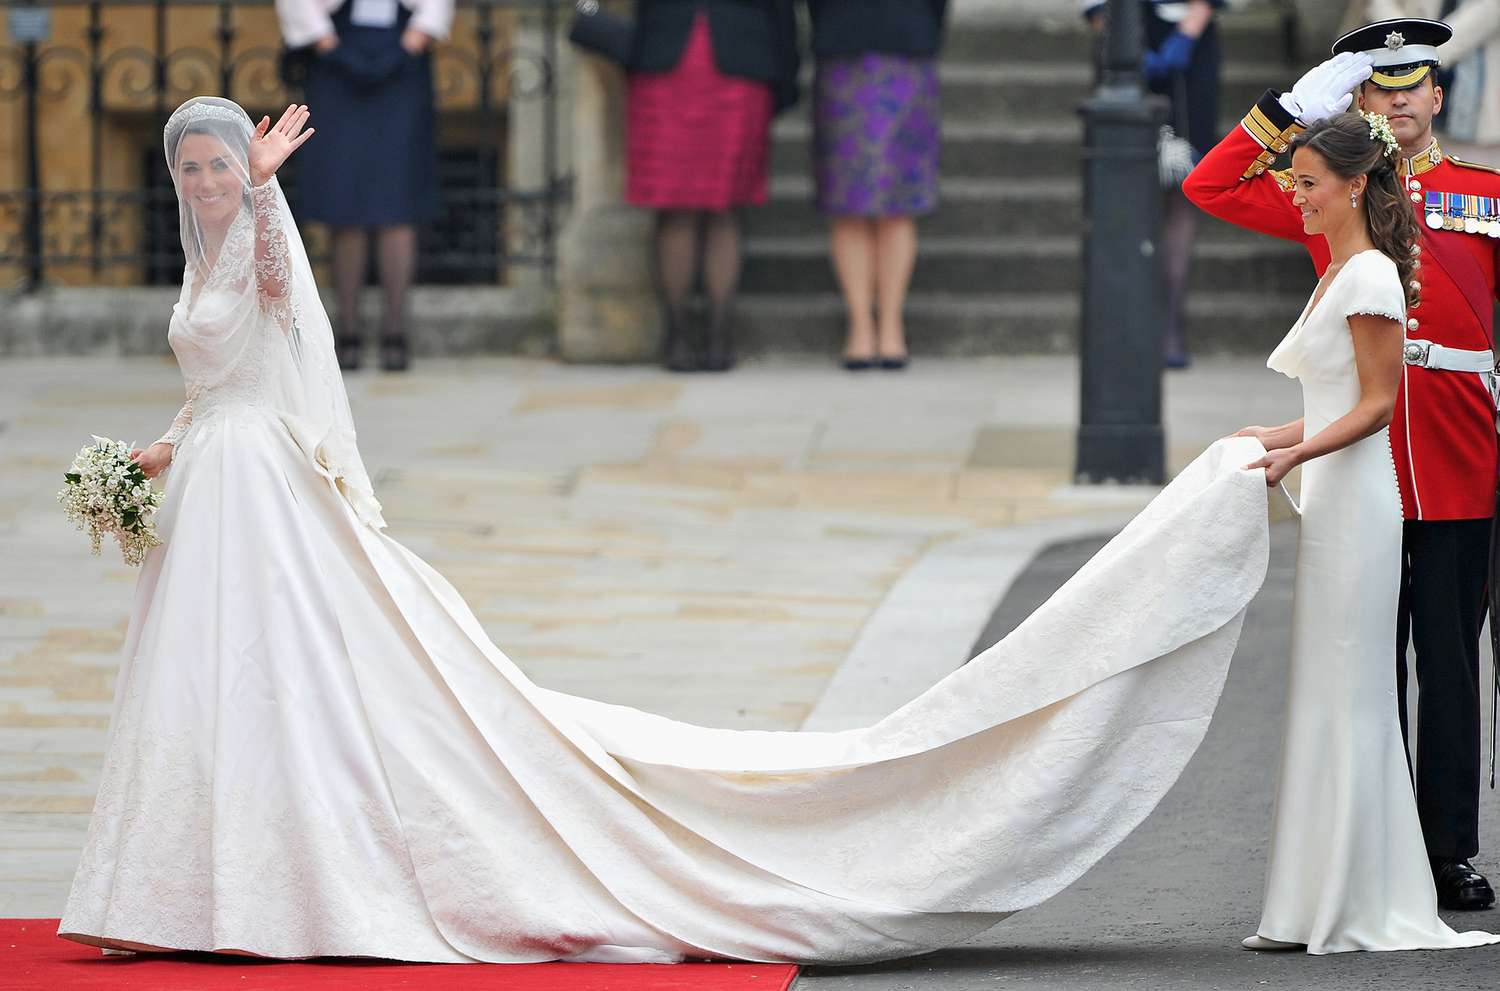 Kate Middleton und Prince William Hochzeitsgast erinnern sich an die Ankunft der Braut: "Alles nur gebrüllt"